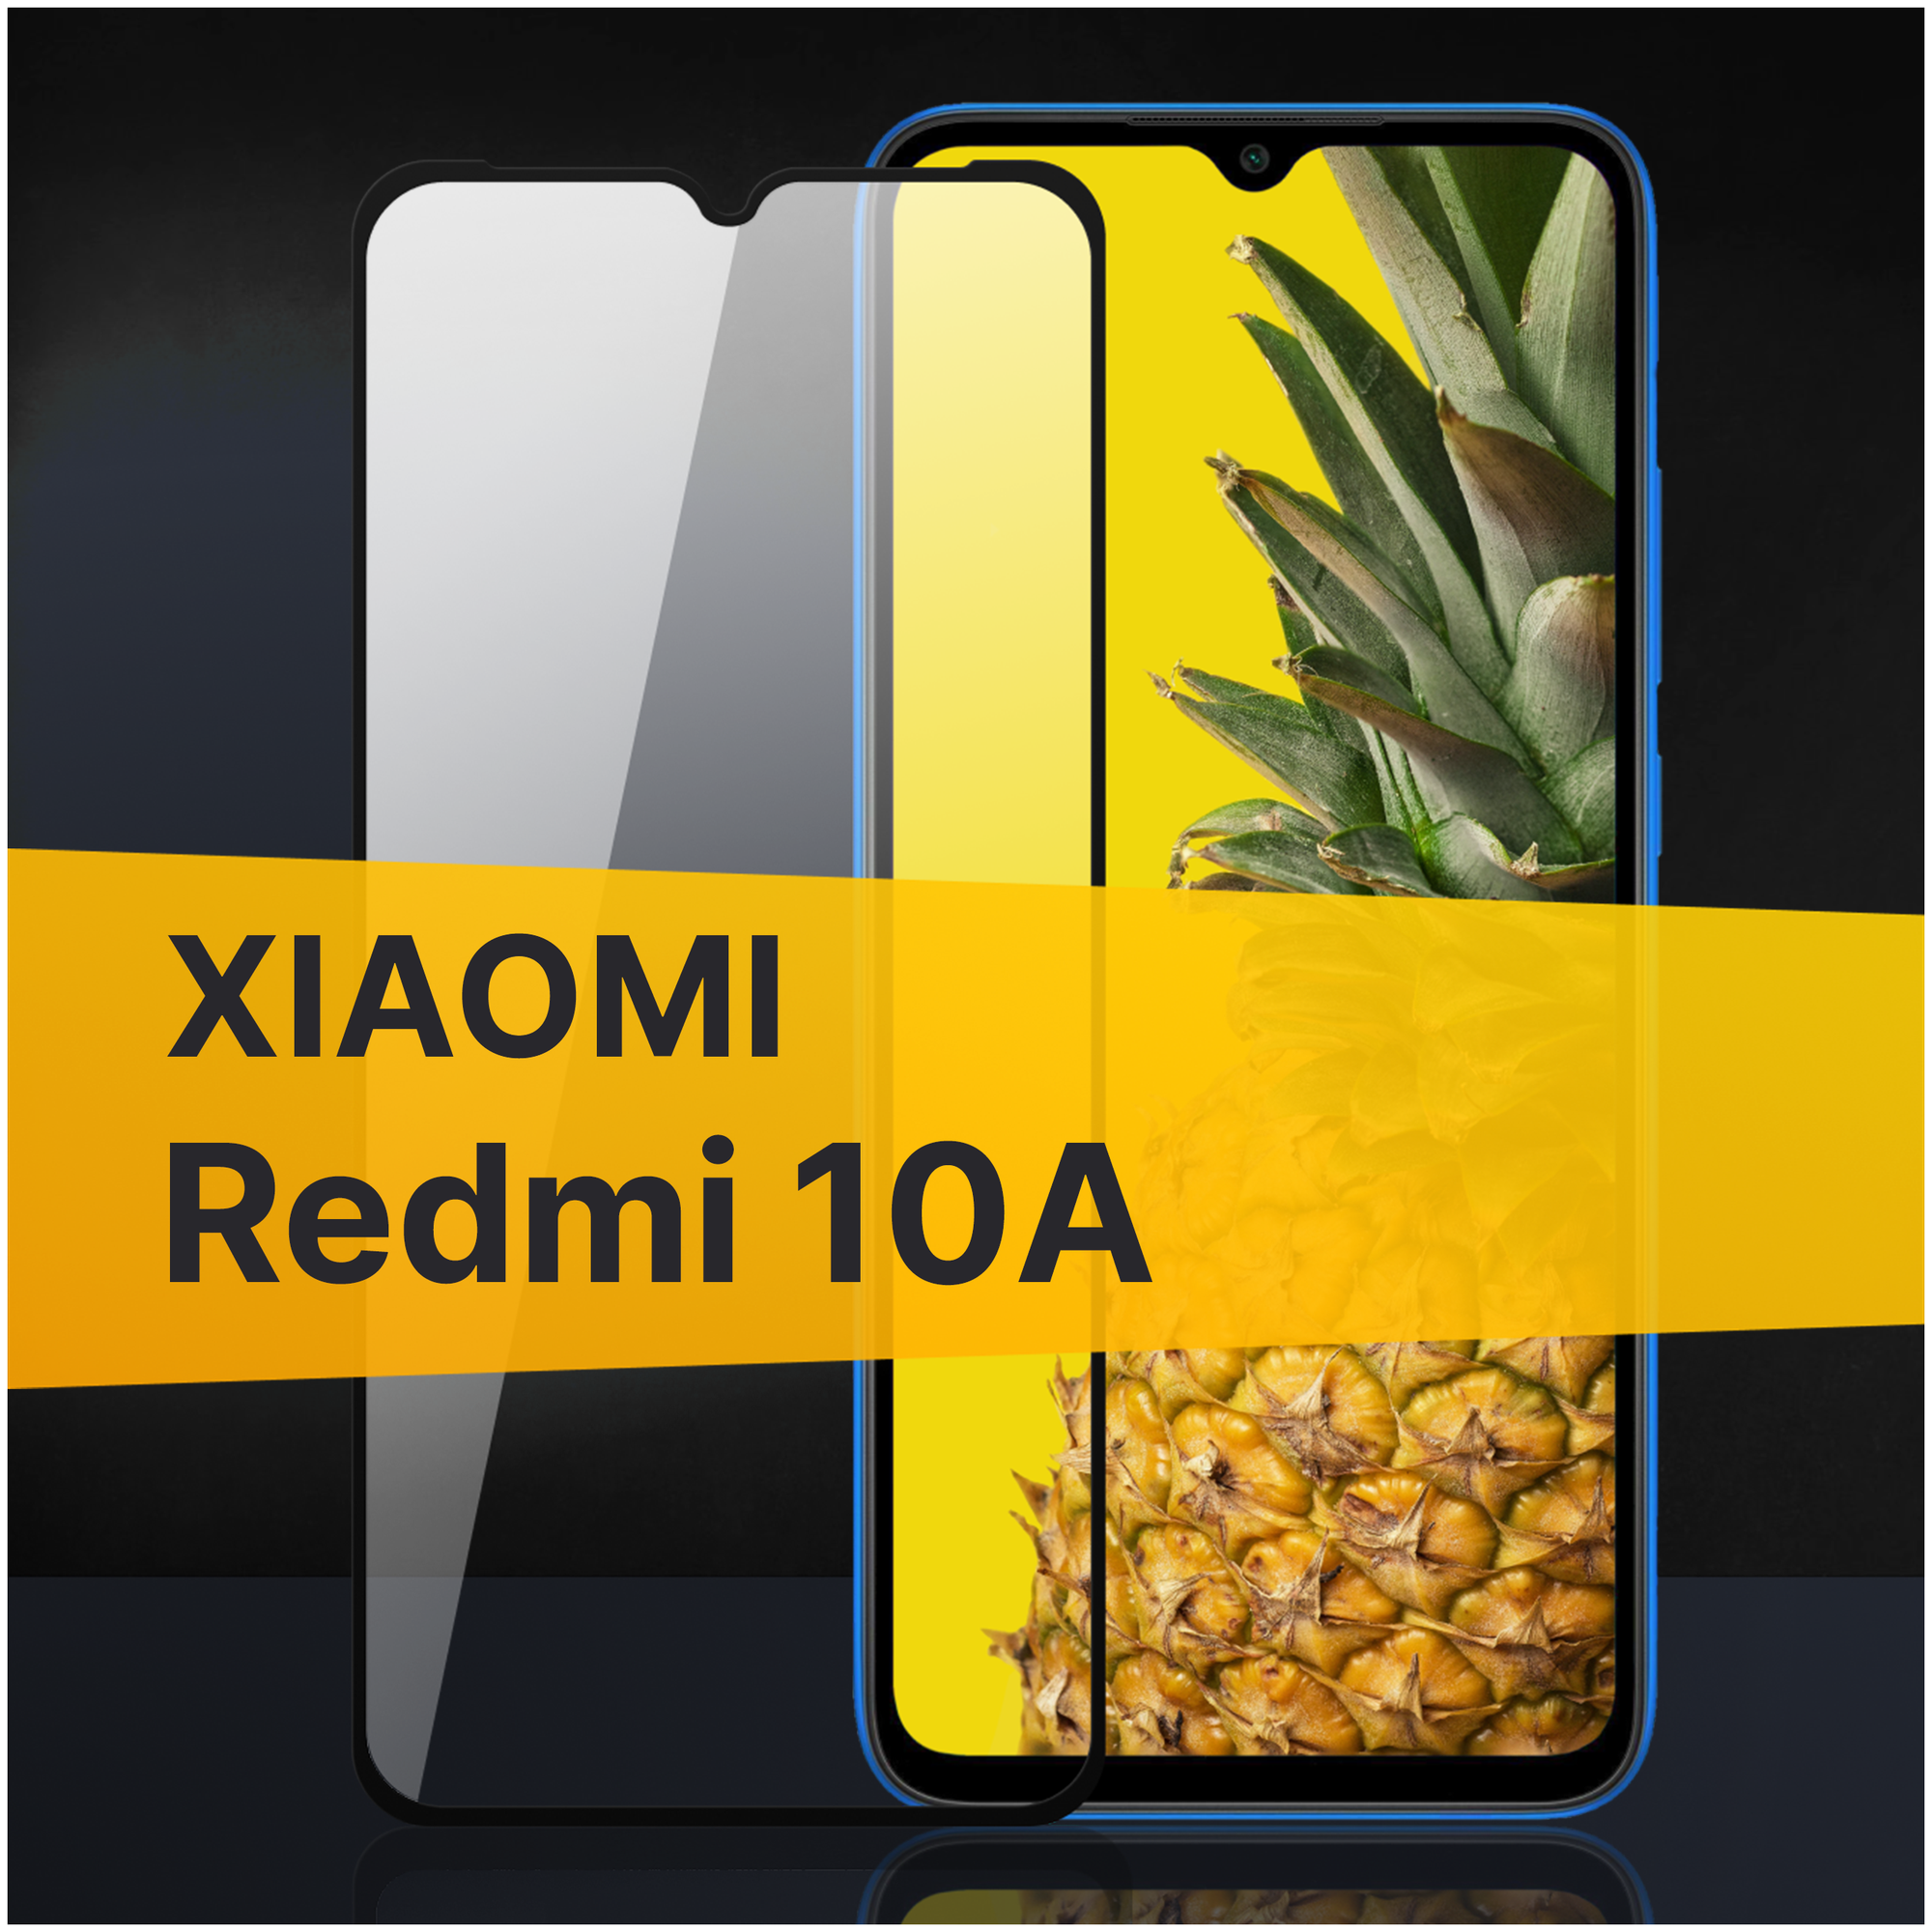 Противоударное защитное стекло для телефона Xiaomi Redmi 10A / Полноклеевое 3D стекло с олеофобным покрытием на смартфон Сяоми Редми 10А / С черной рамкой